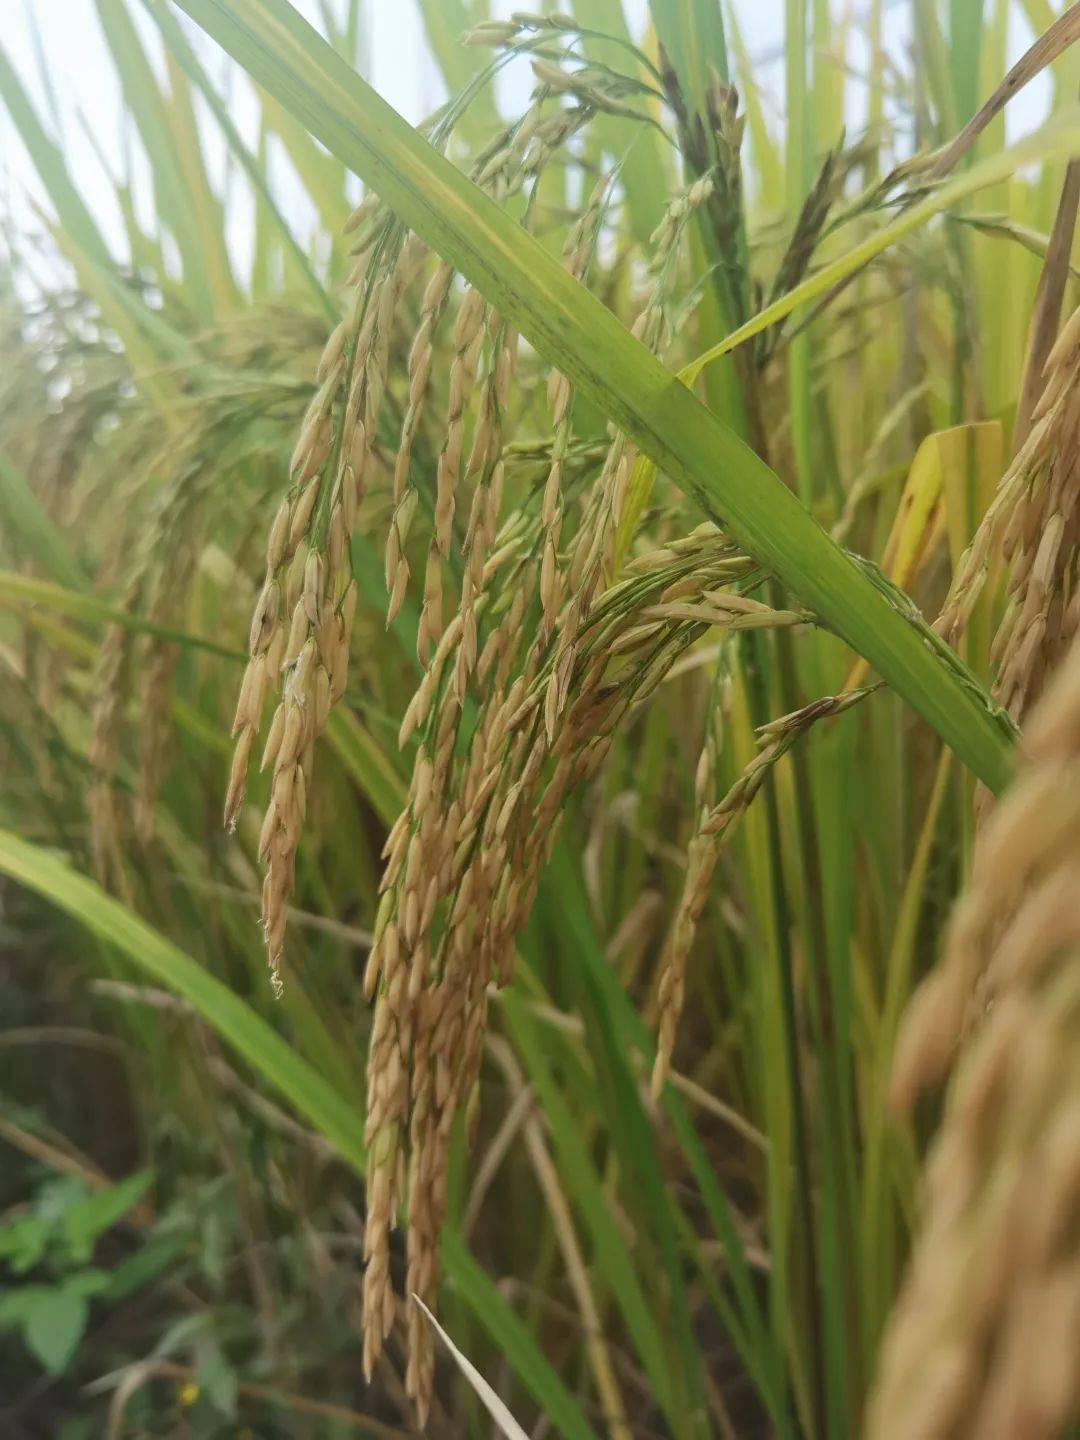 龙洋12水稻品种简介图片